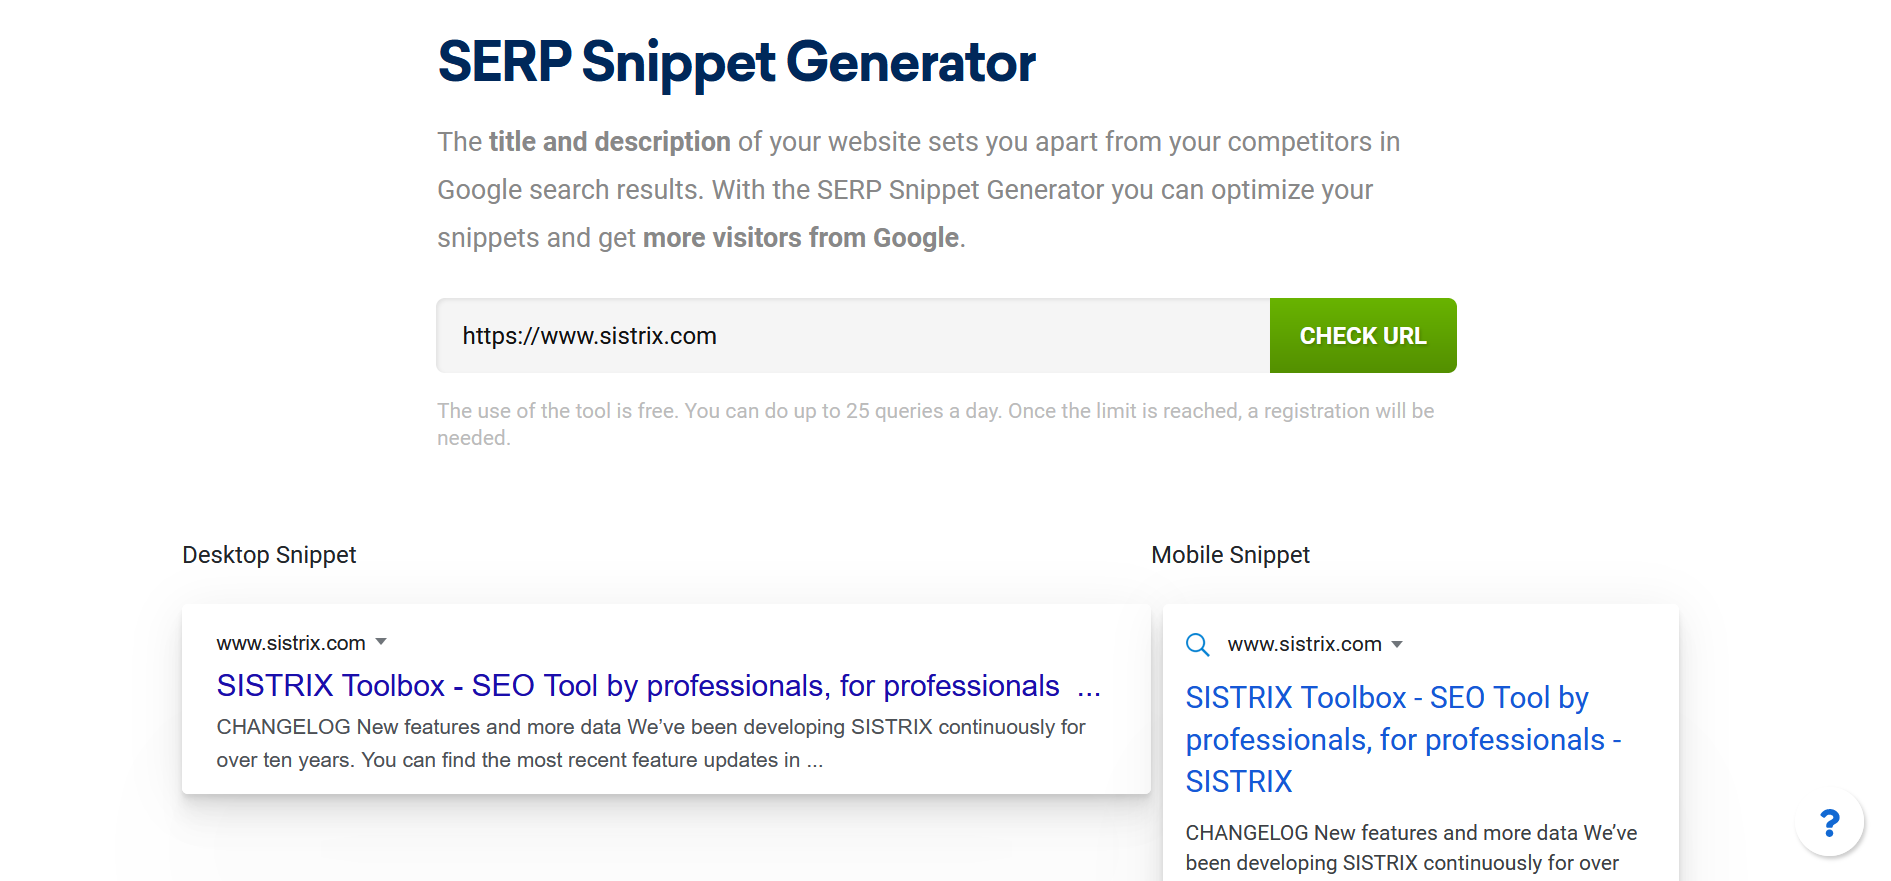 Captura de pantalla de SERP Snippet Generator de Sistrix